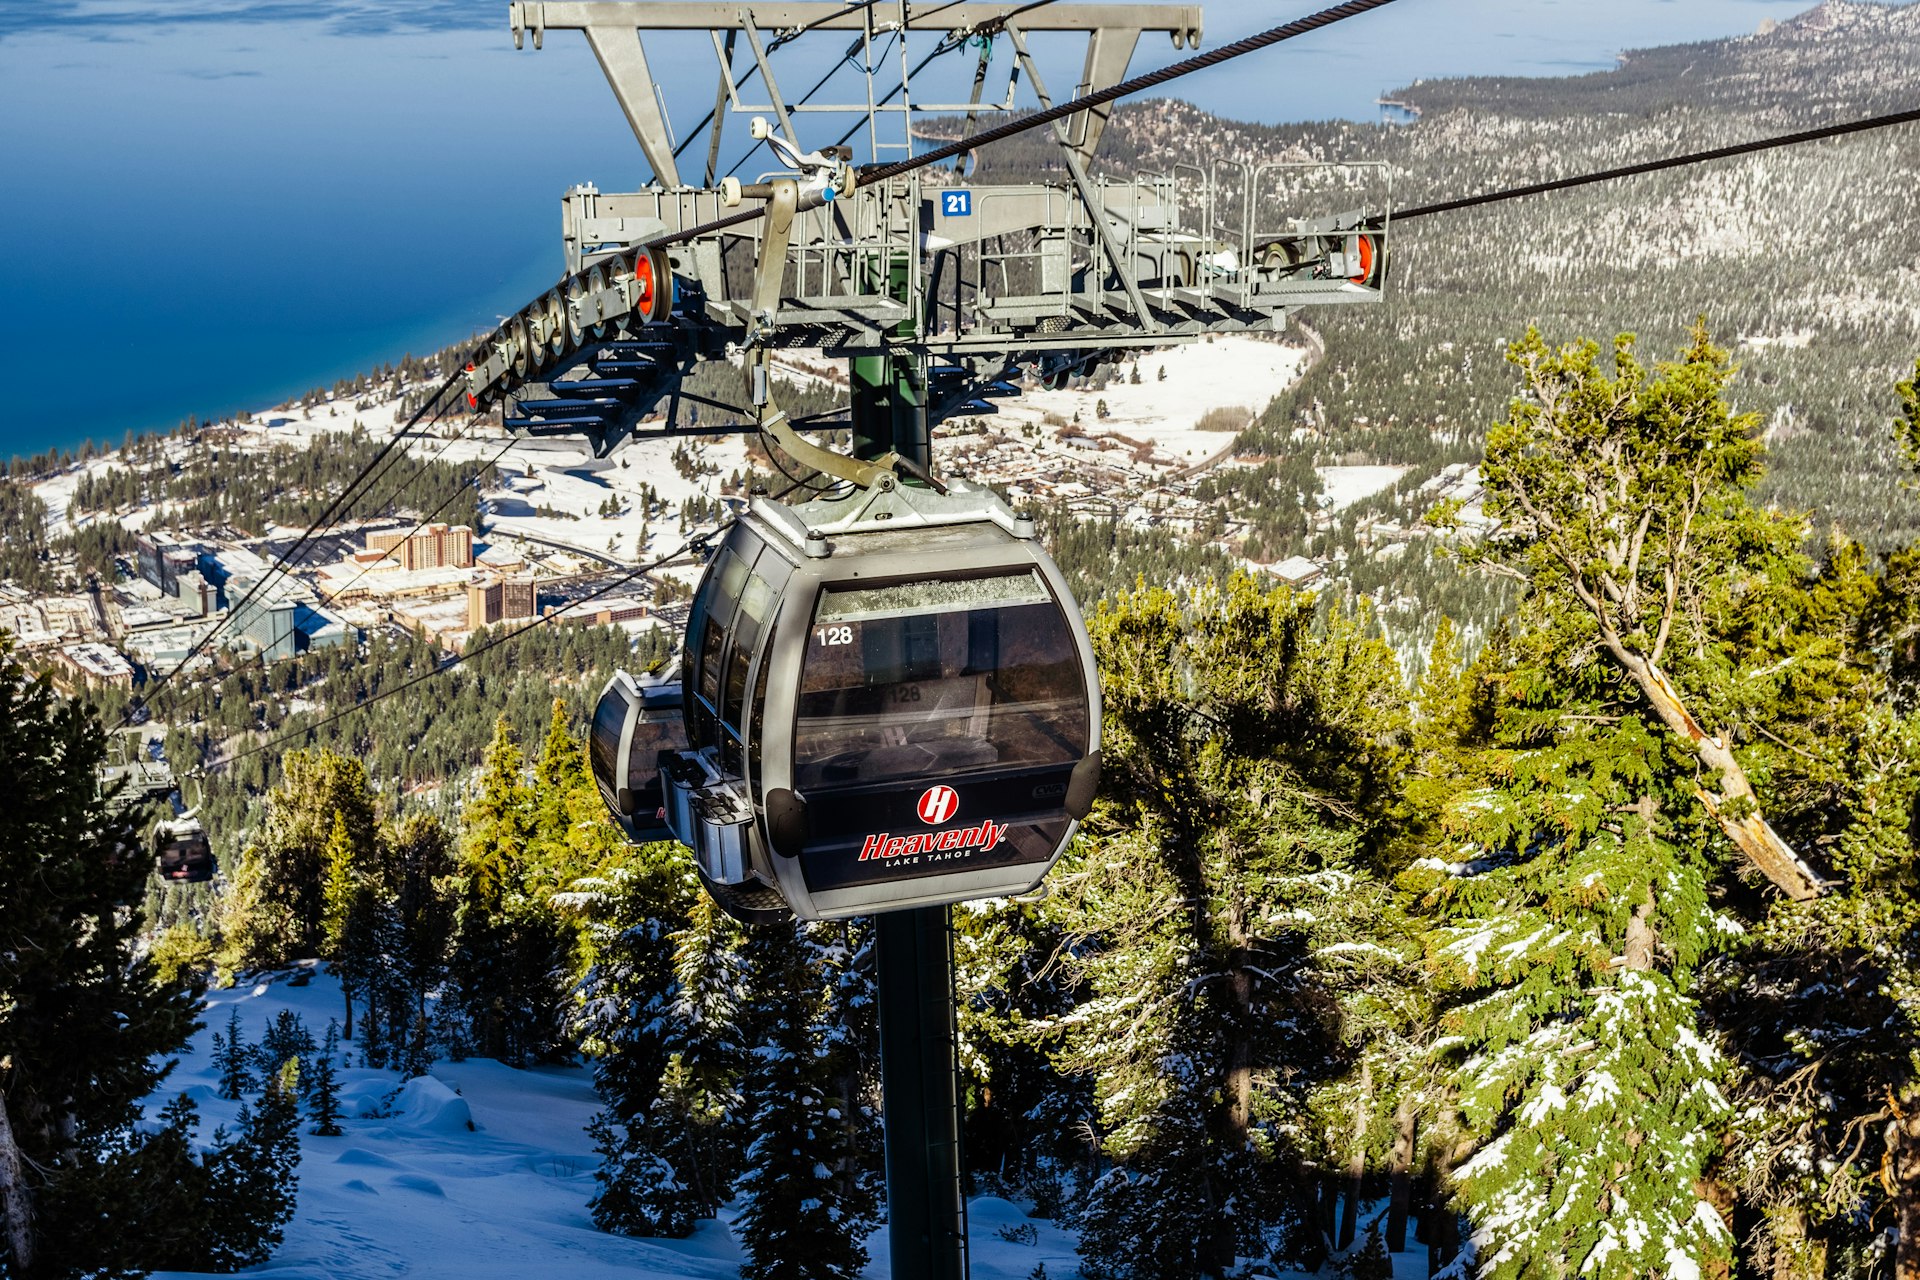  Heavenly ski resort Gondolas on a sunny day